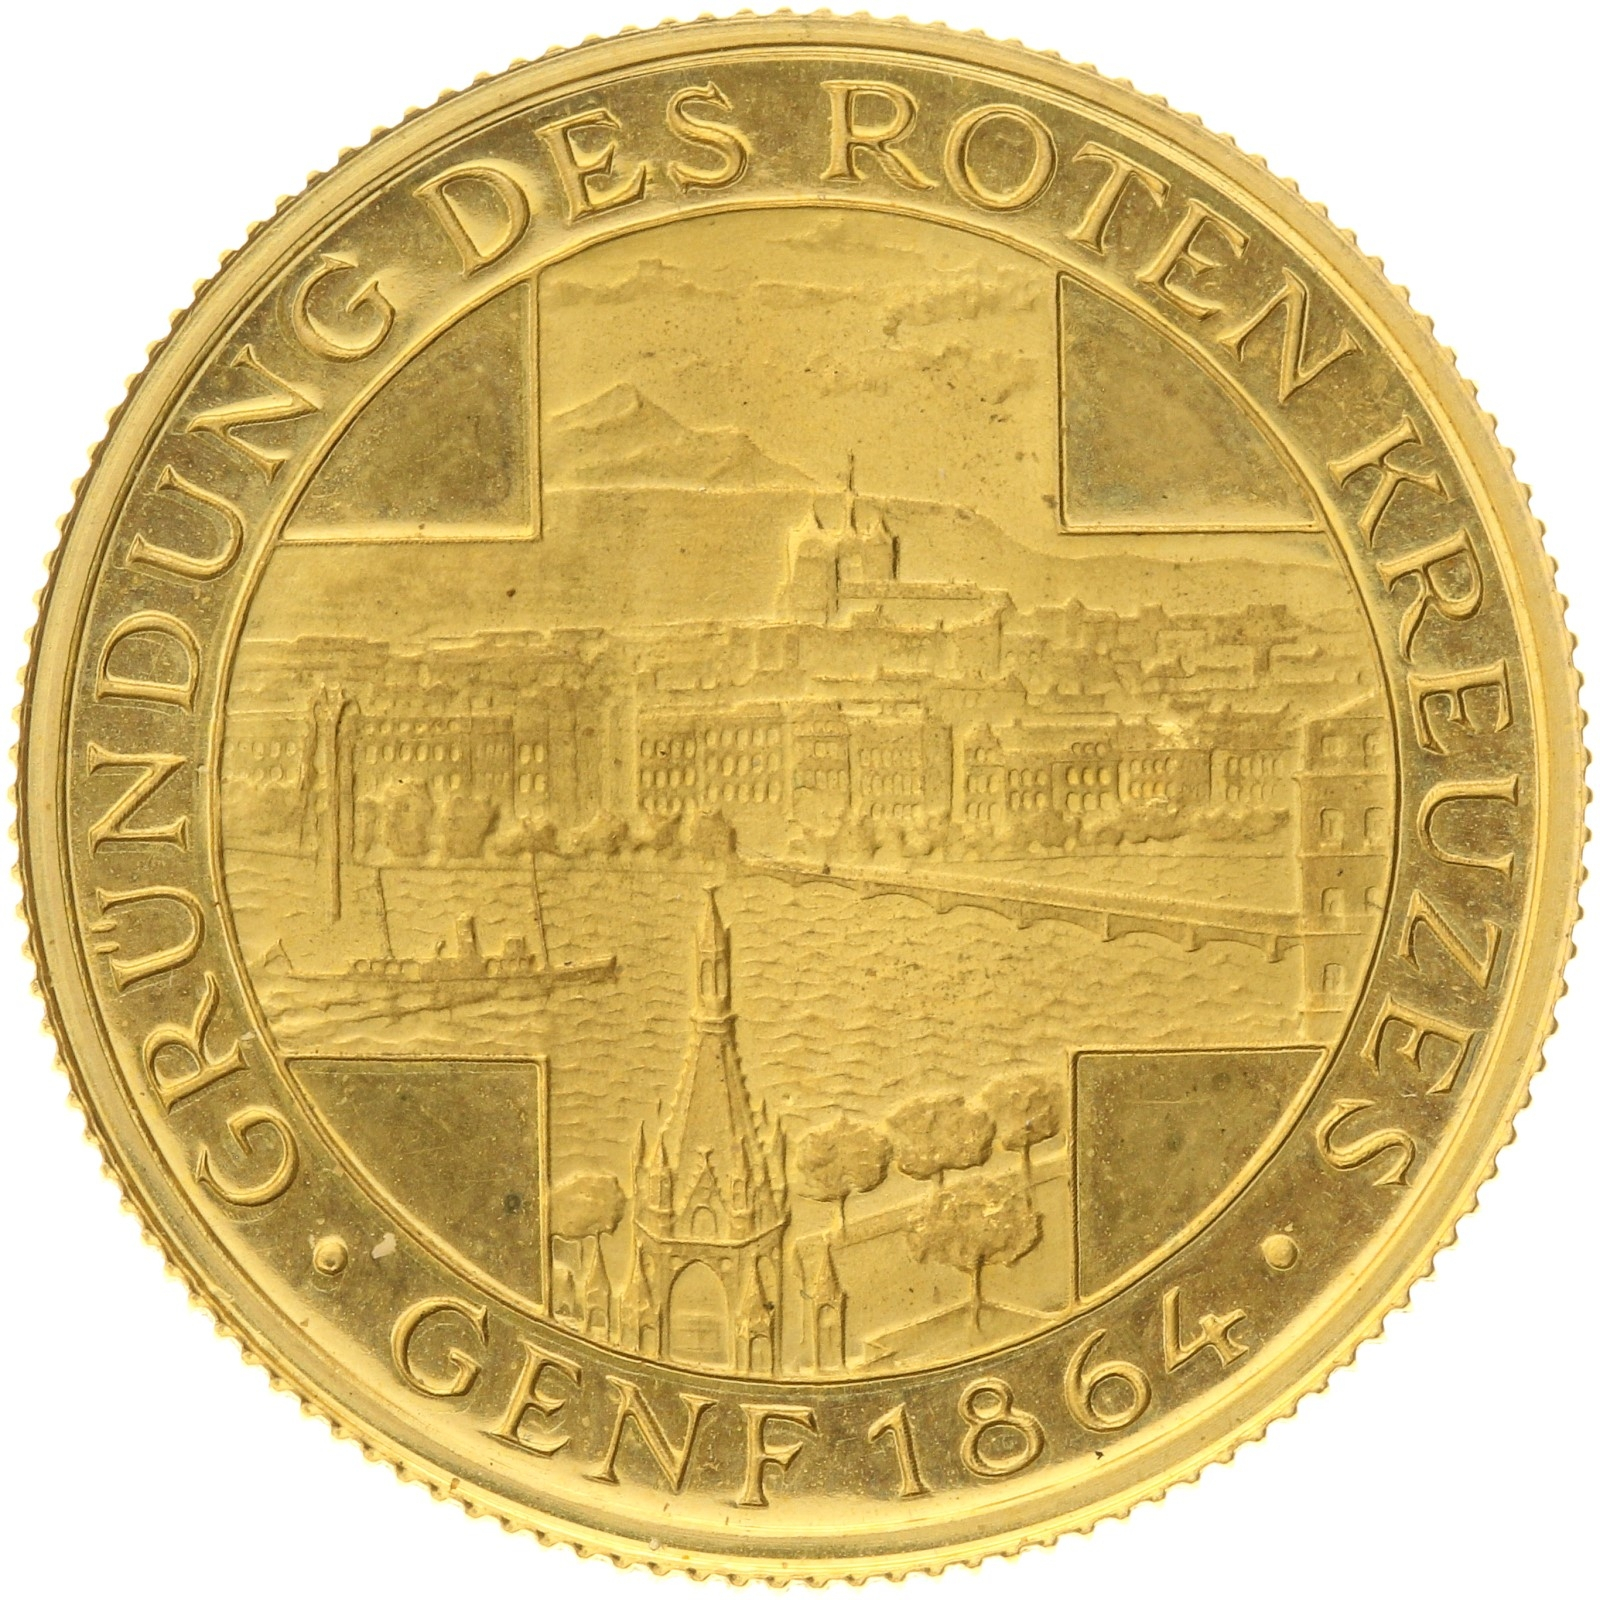 Denmark - Medal (1 ducat) - 1970s - Henri Dunant